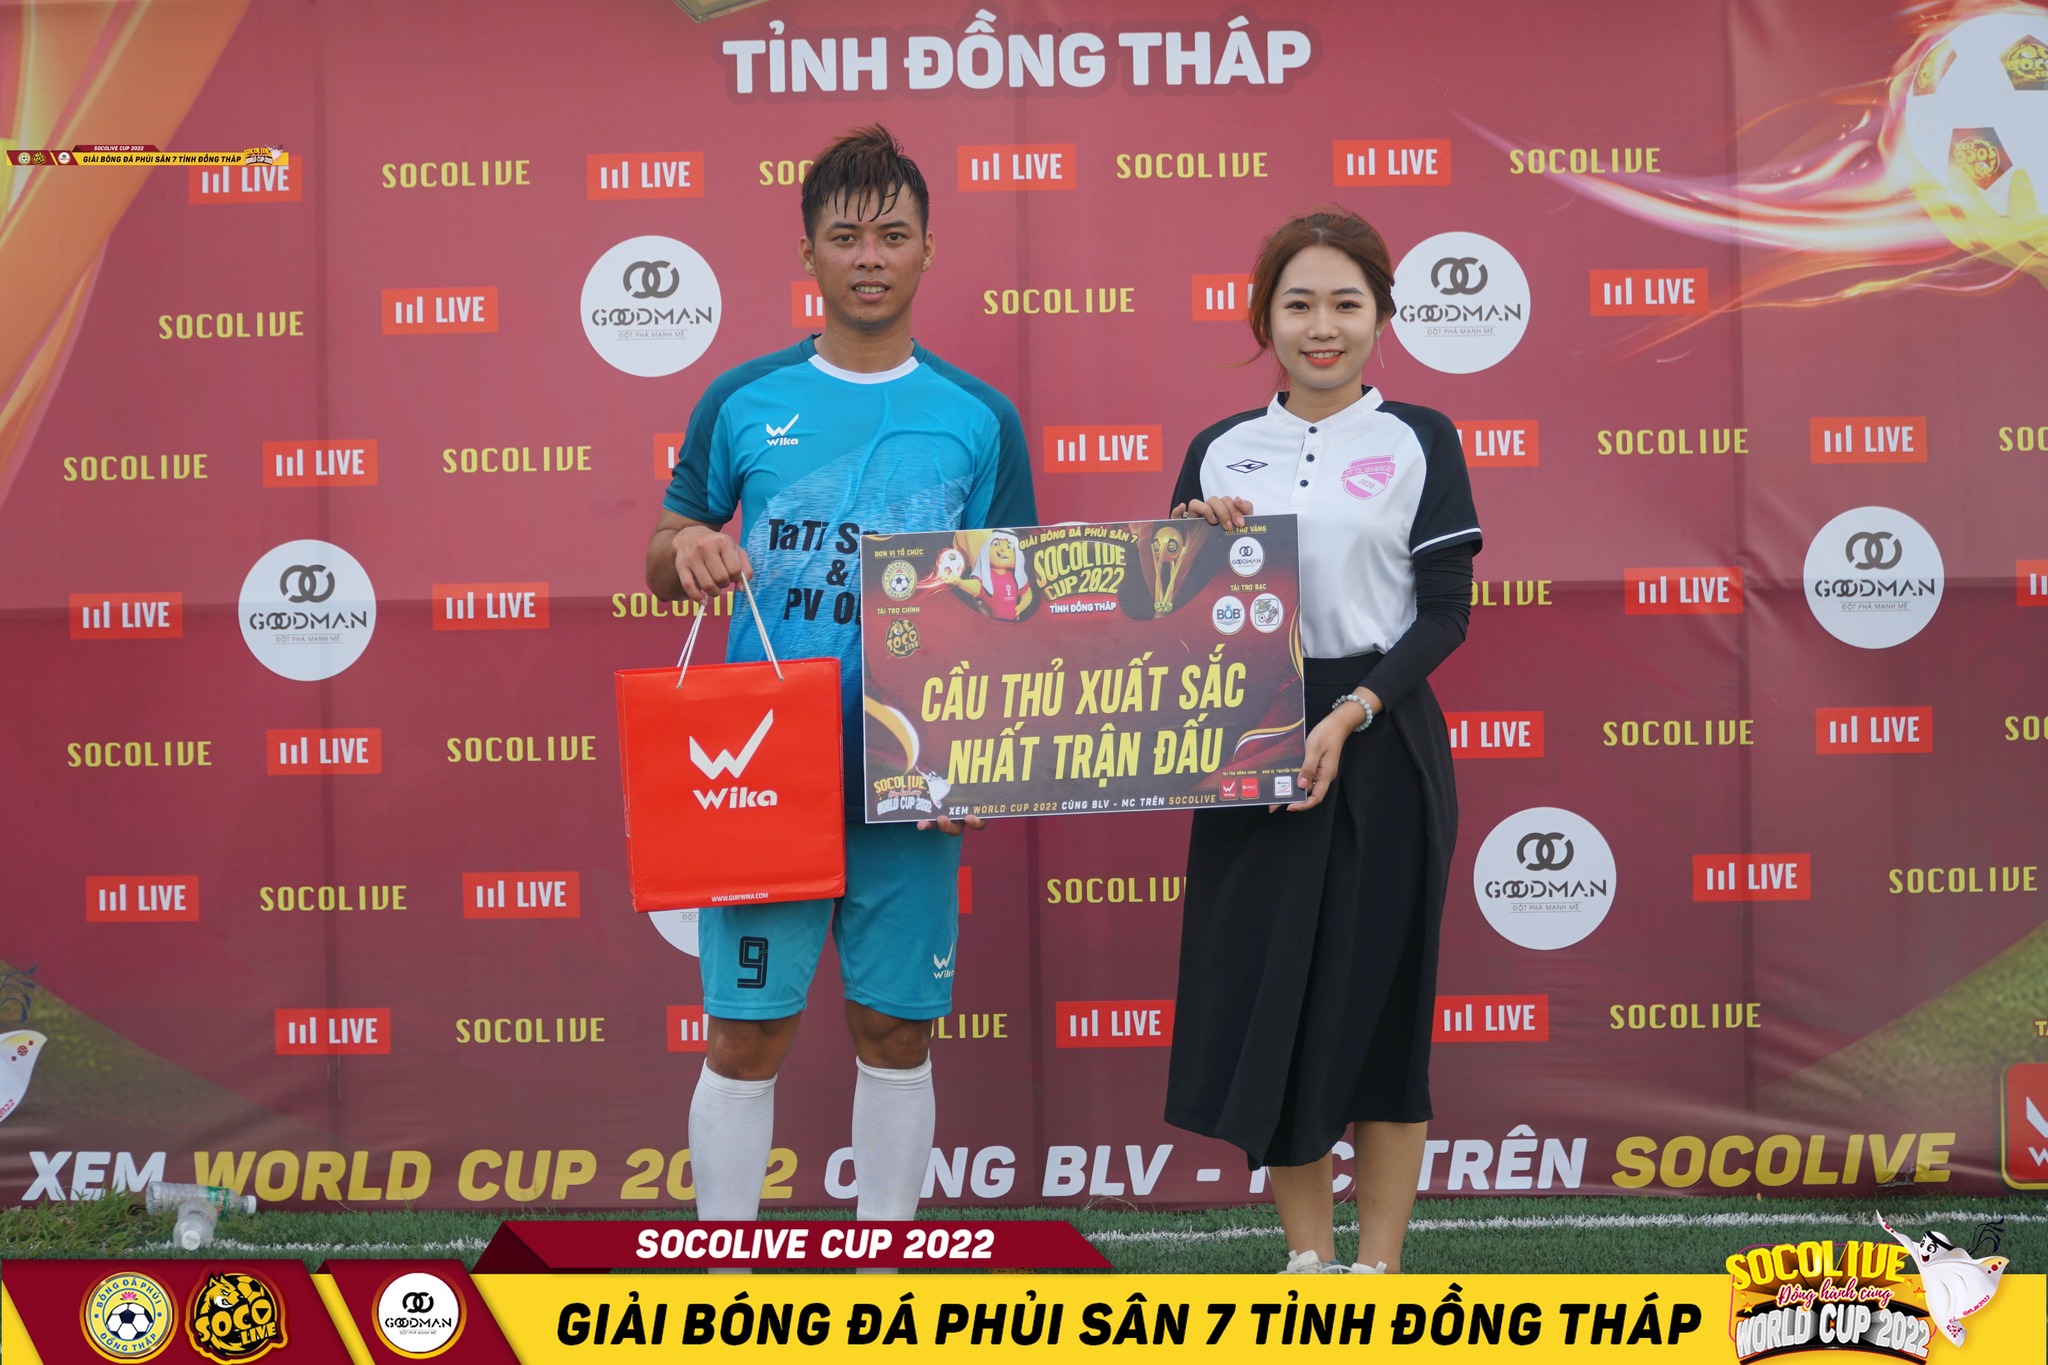 Quang Vinh - CĐT Đồng Tháp xuất sắc nhất Vòng 3 Giải bóng đá Đồng Tháp Socolive Cup 2022